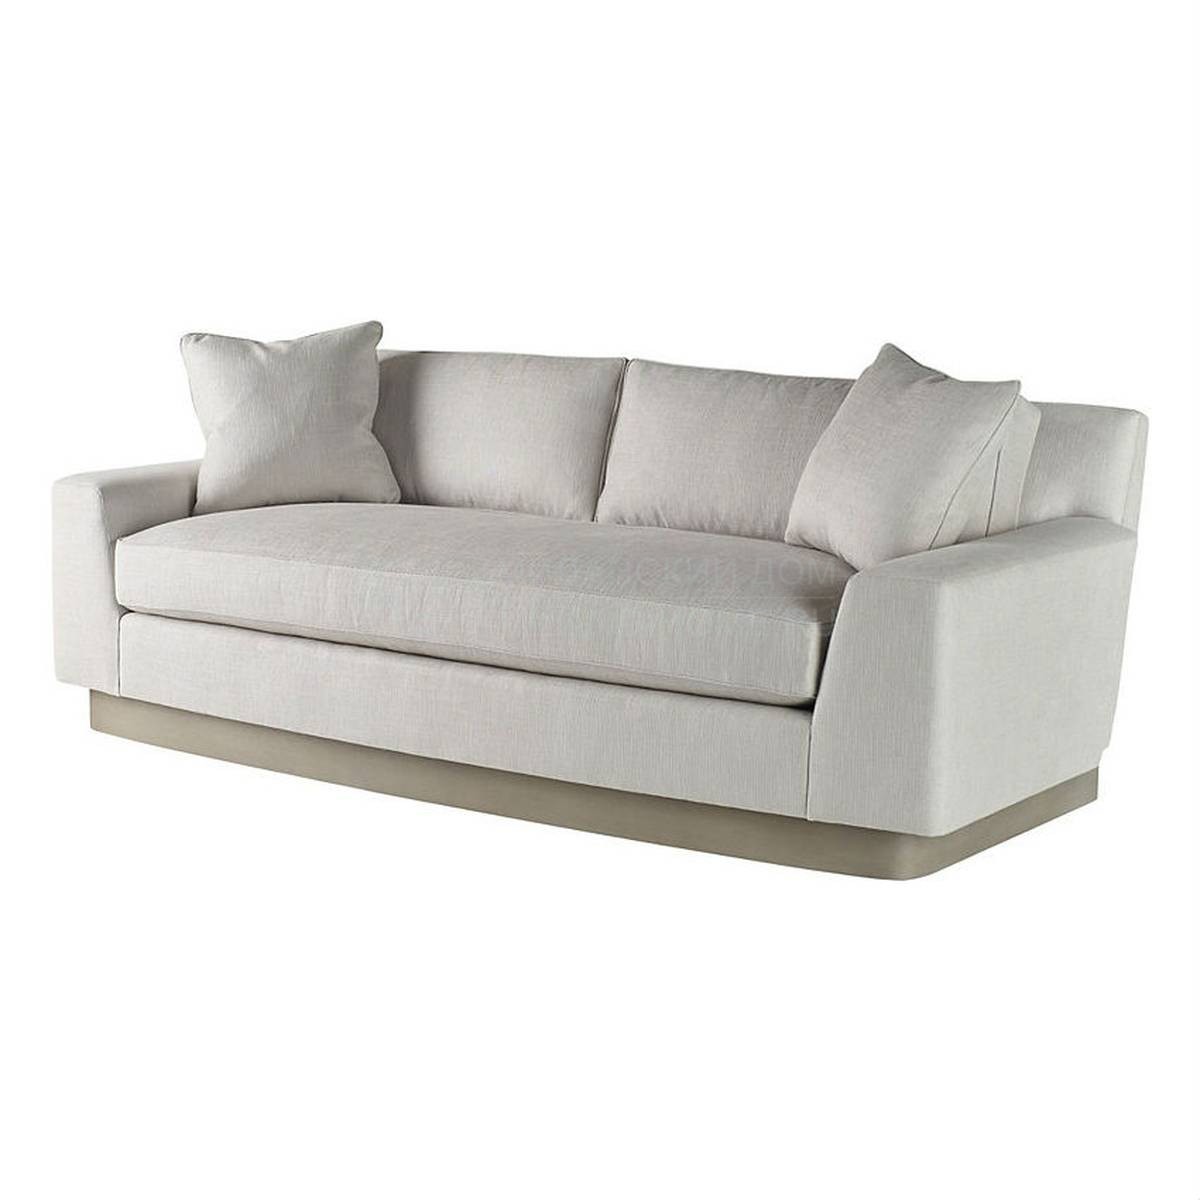 Прямой диван Laguna sofa из США фабрики BAKER